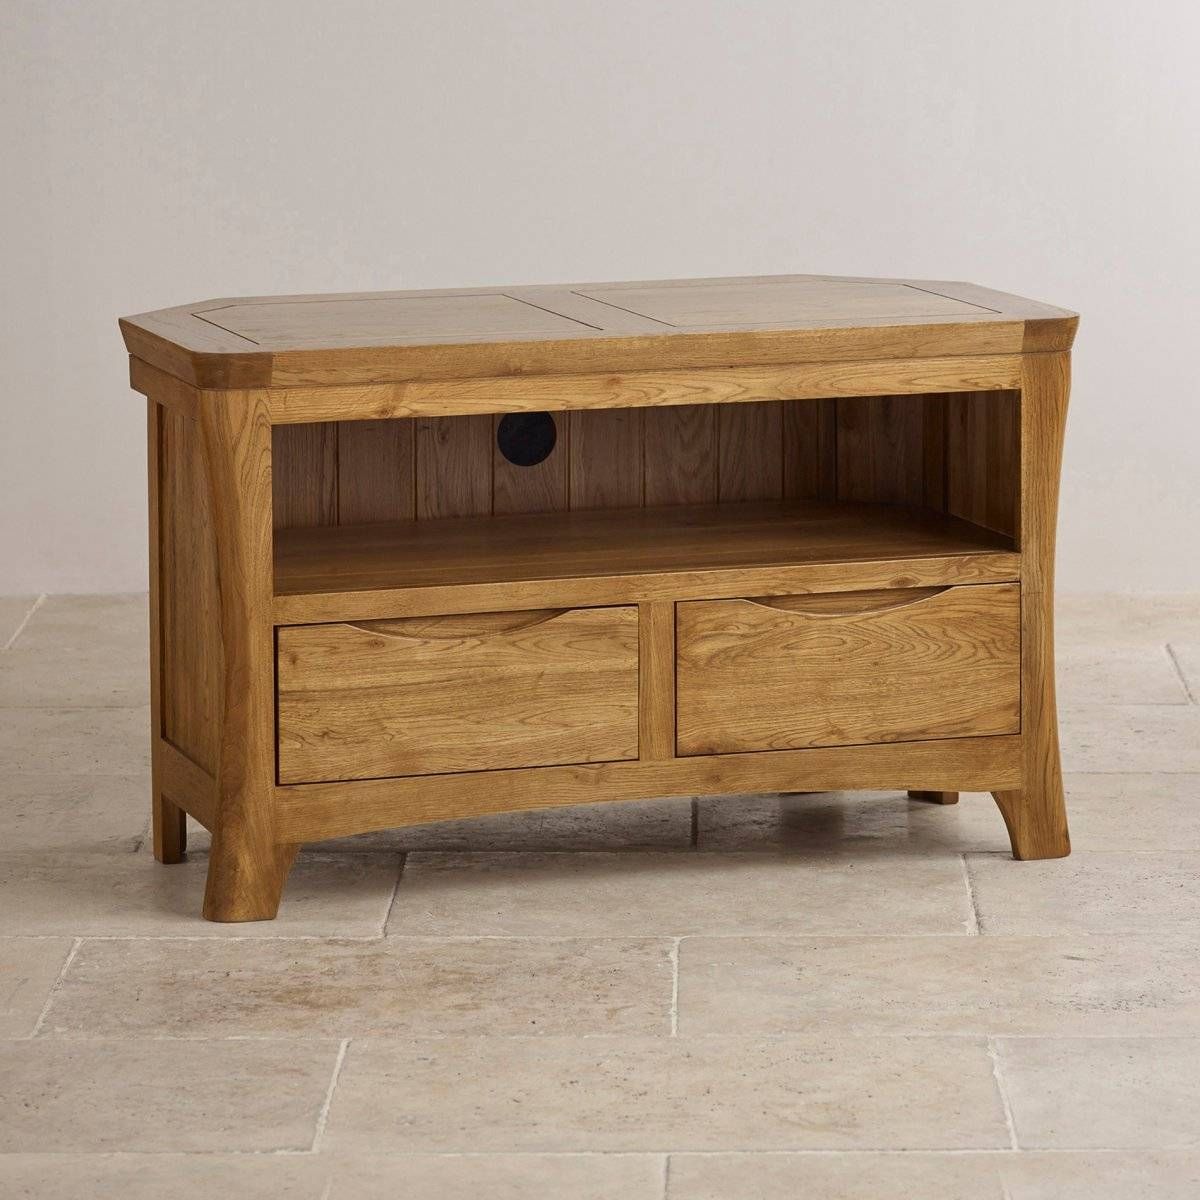 Orrick Corner Tv Cabinet In Rustic Oak | Oak Furniture Land With Rustic Oak Tv Stands (View 7 of 15)